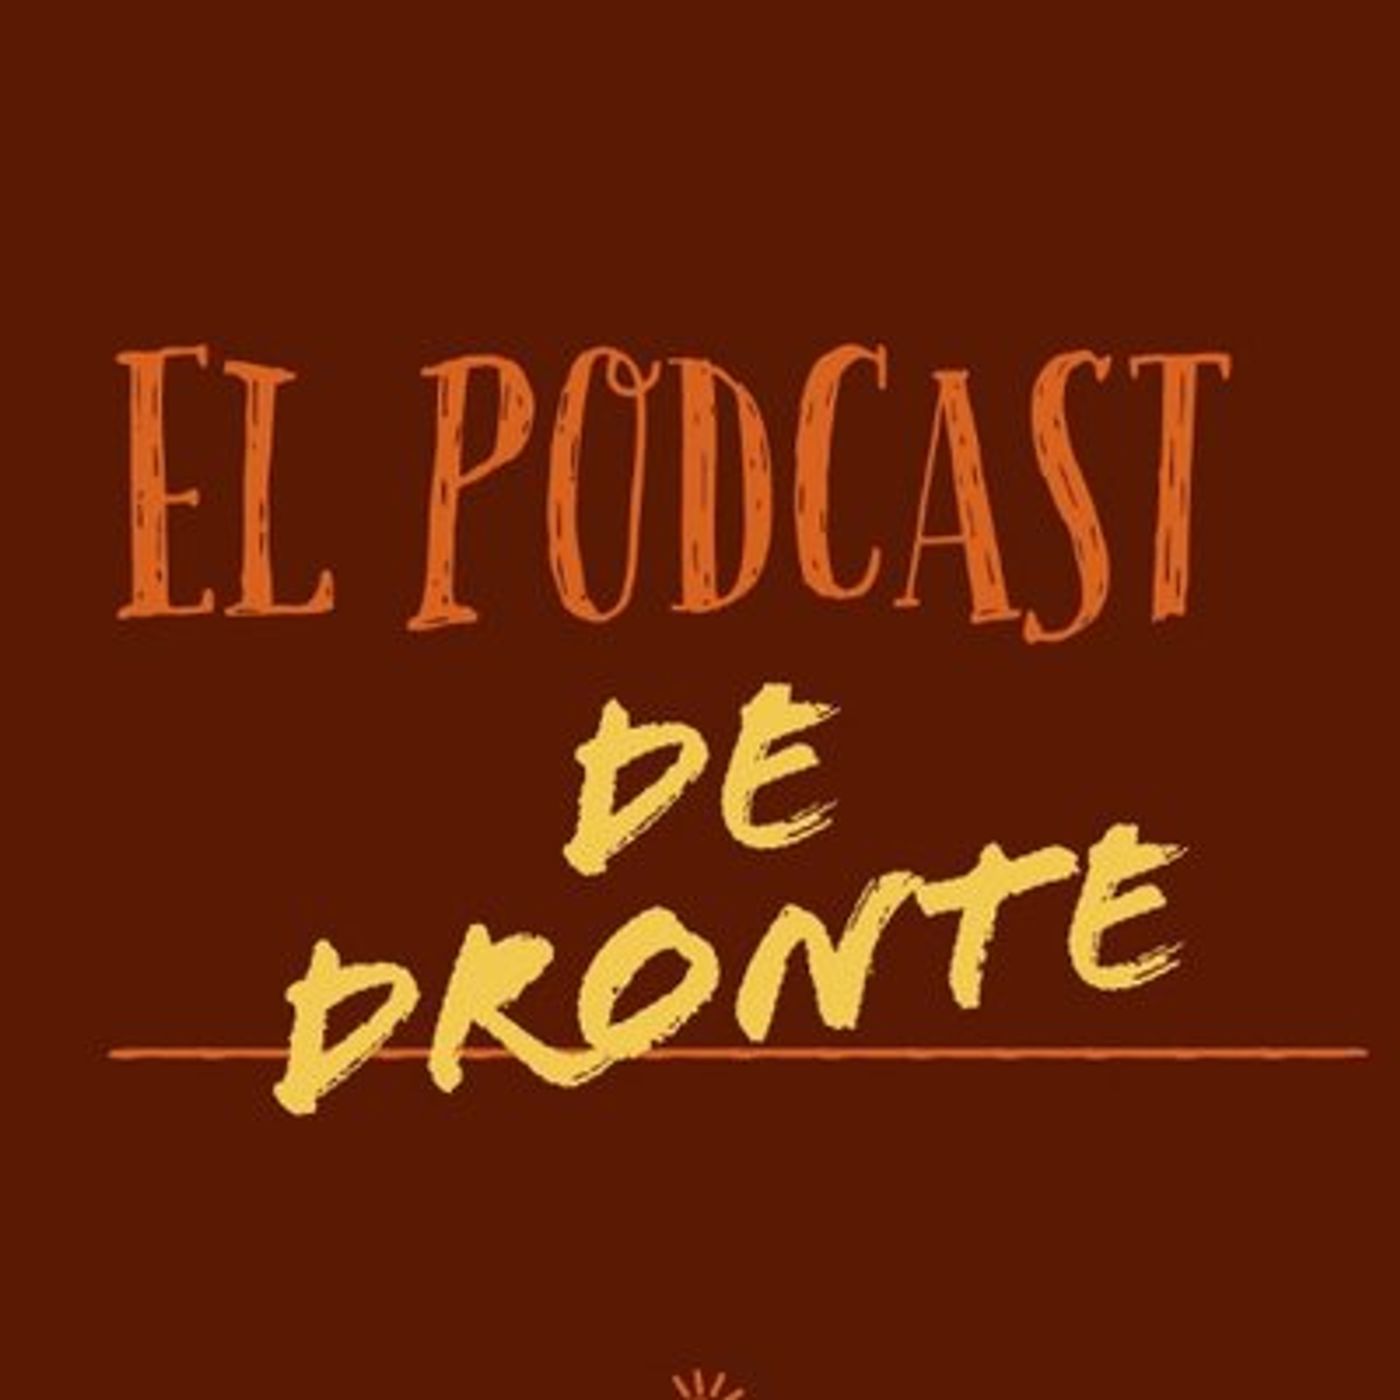 El podcast de Dronte